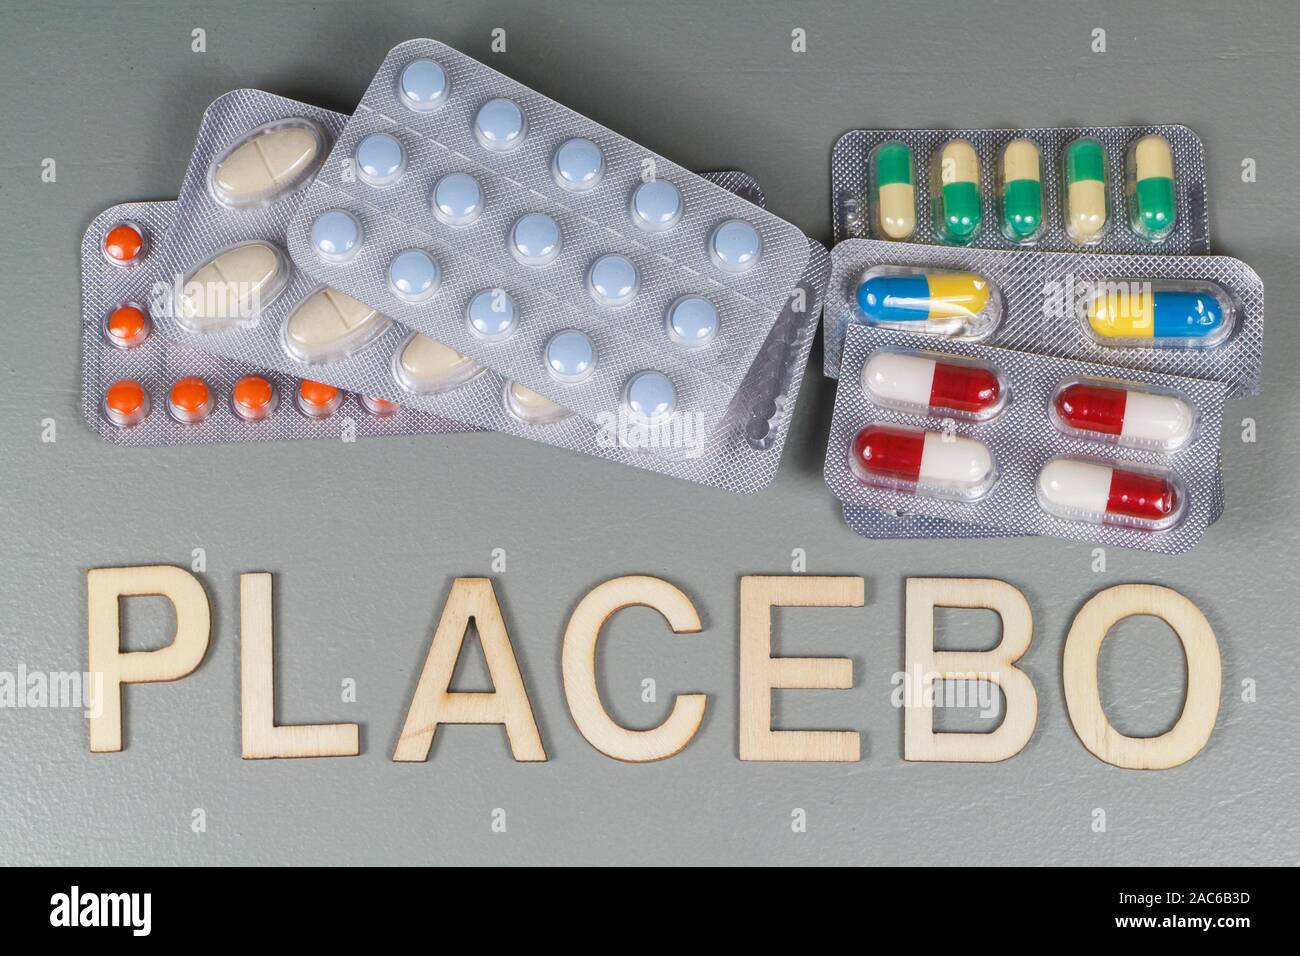 Confezioni di pillole e placebo scritto in lettere in legno Foto Stock